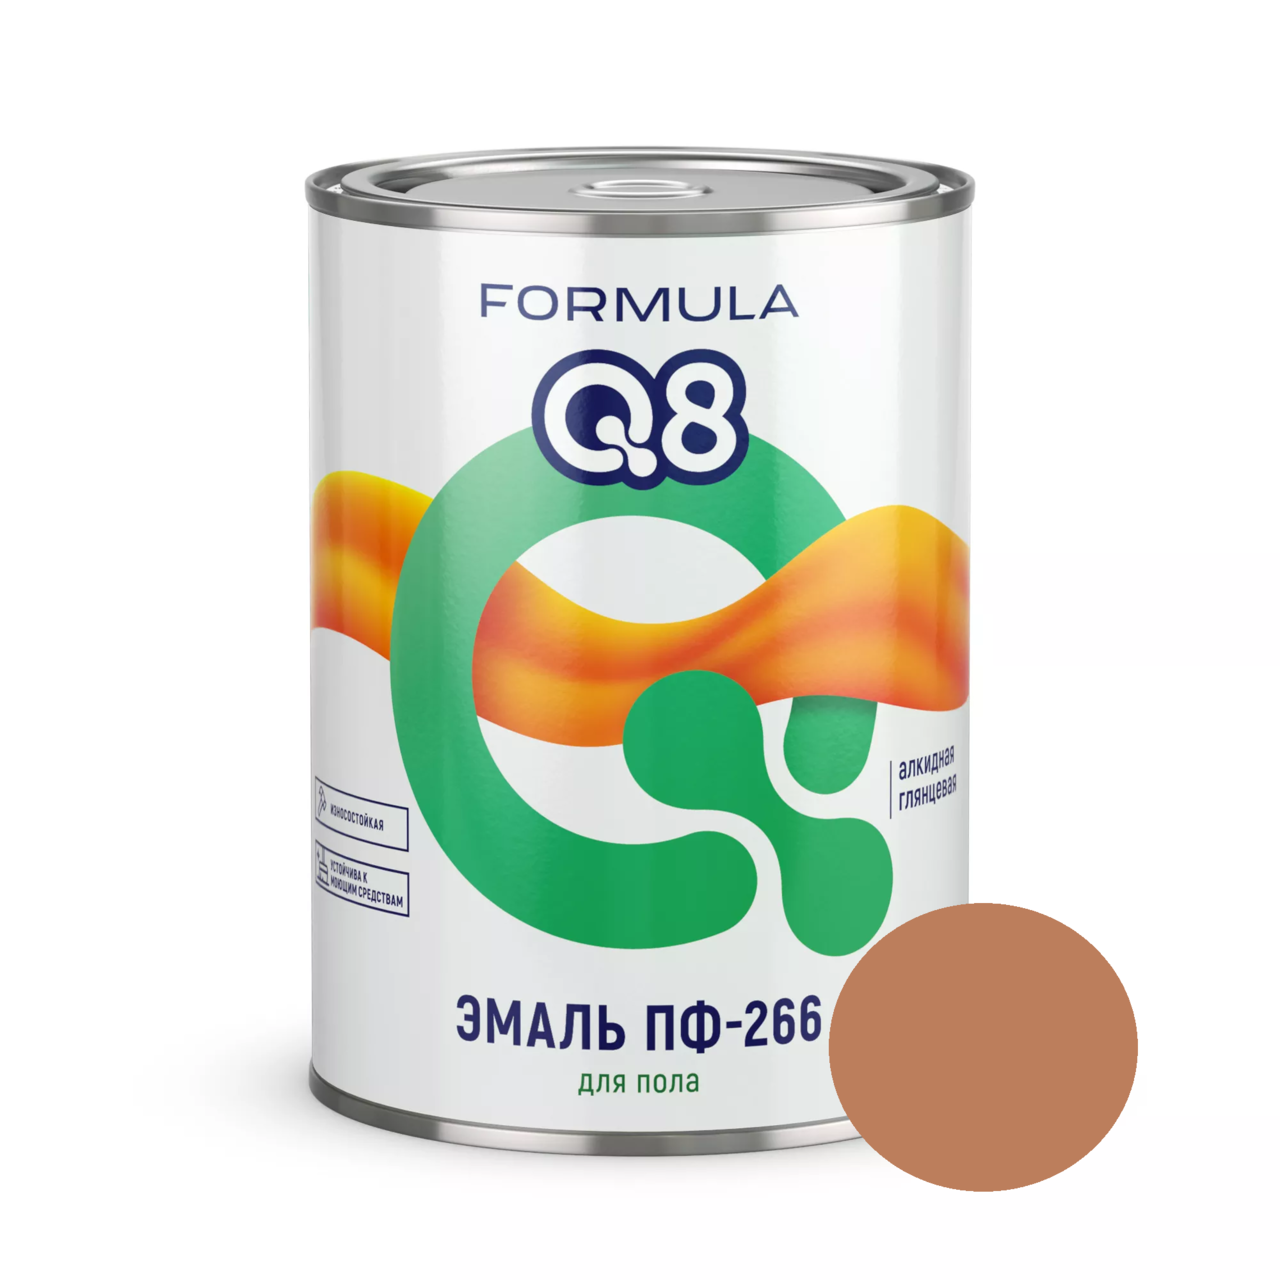 Эмаль ПФ-266 Formula Q8 золотисто-коричневая 1,9 кг